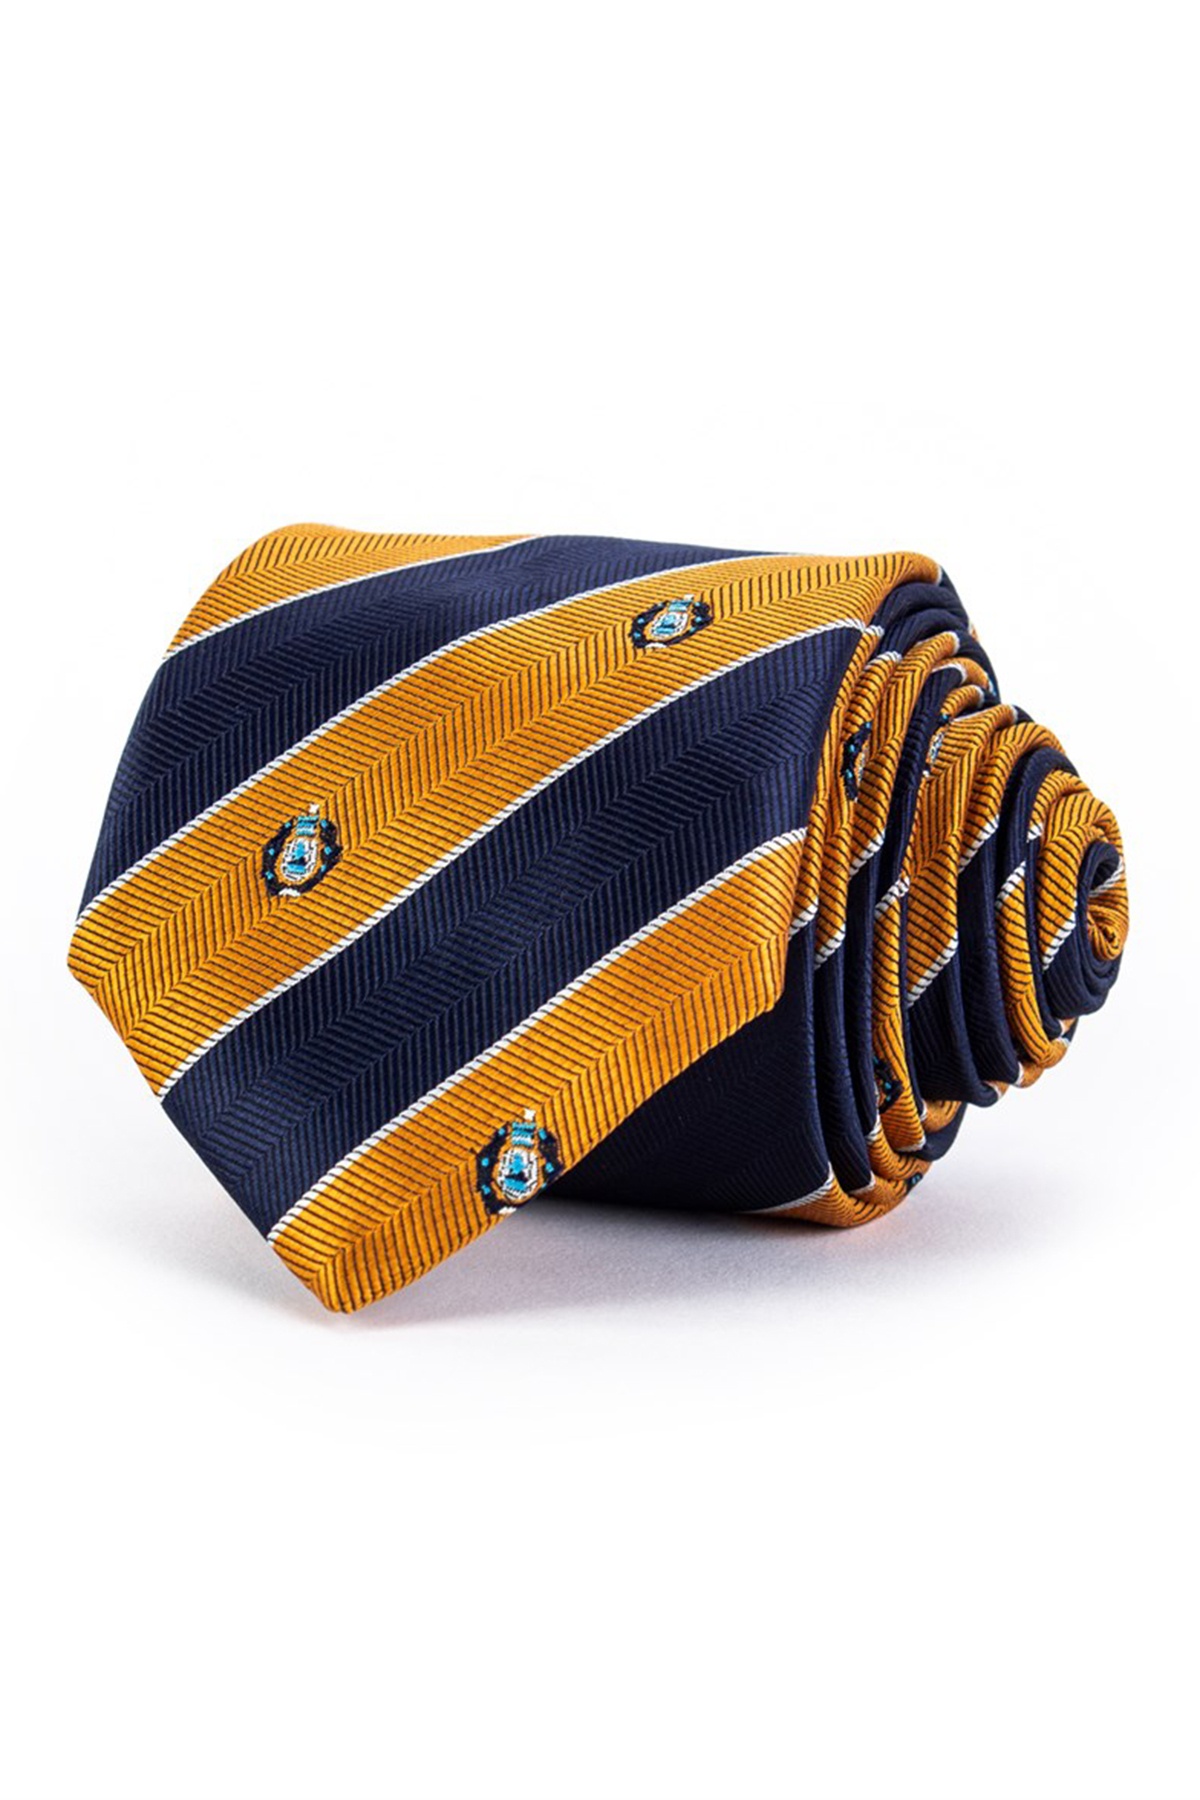 Kék-sárga csíkos klasszikus nyakkendő apró mintákkal